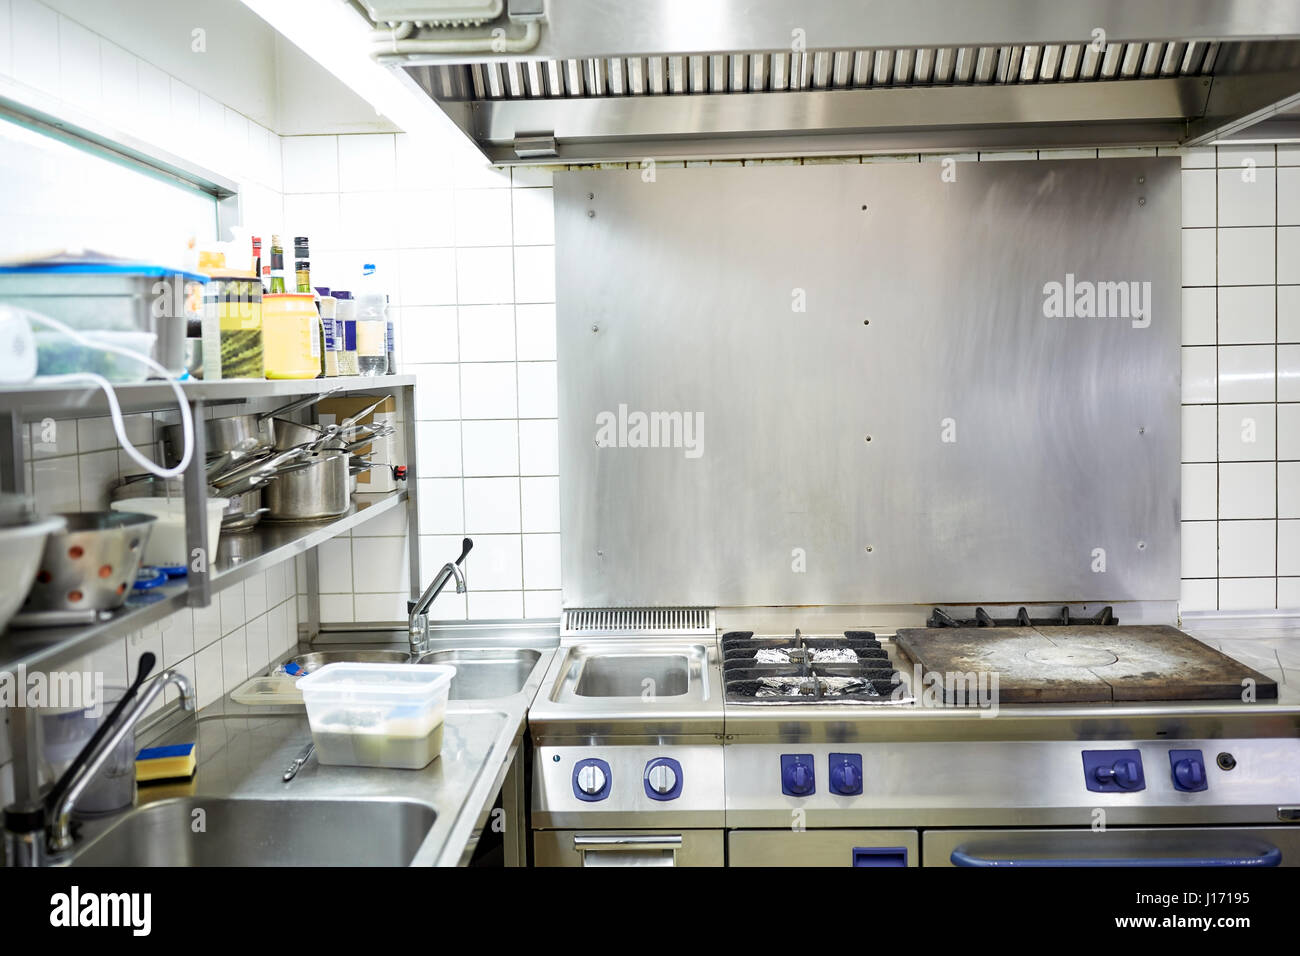 restaurant professional kitchen equipment Stock Photo